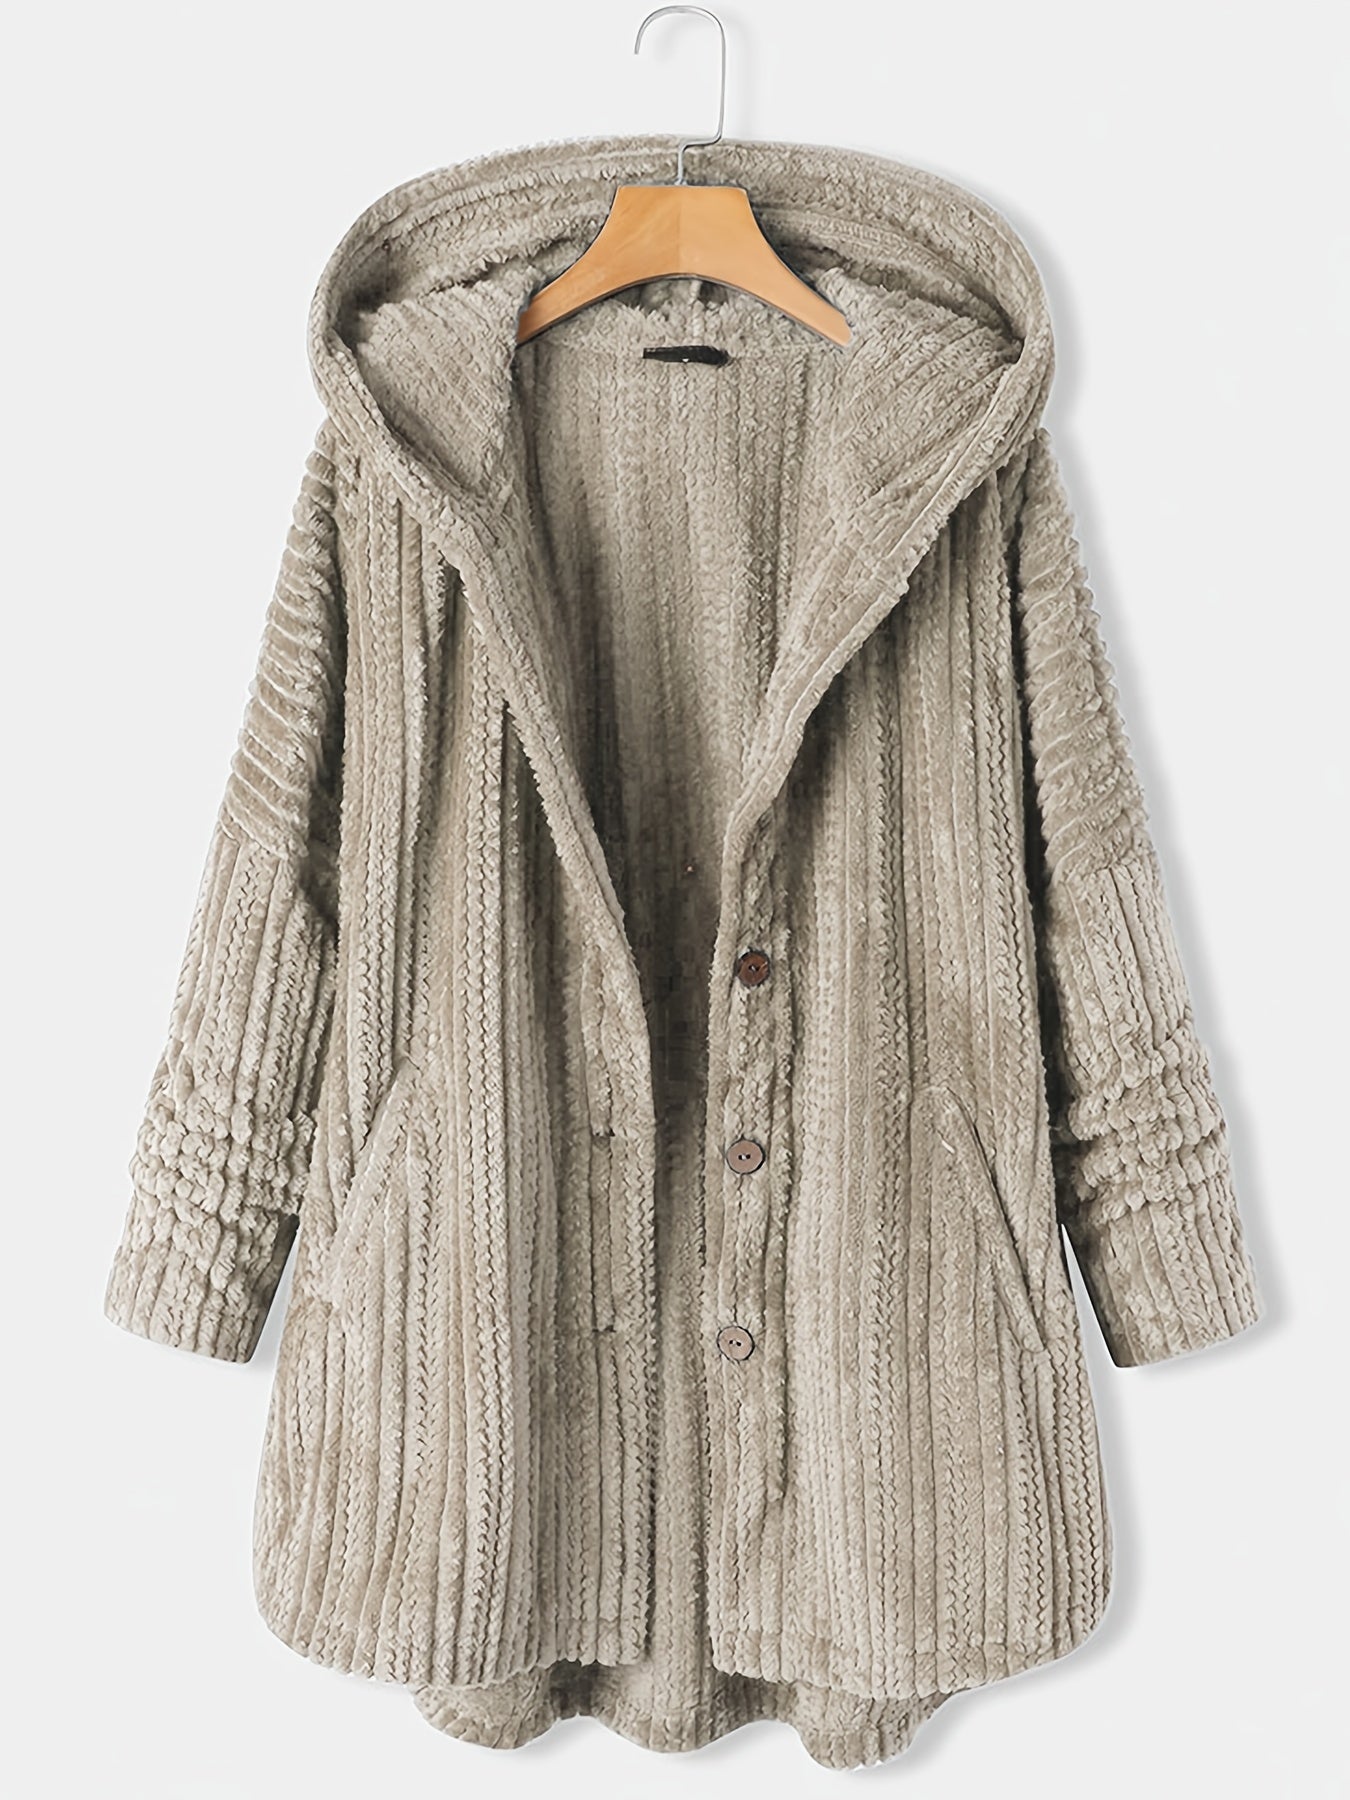 Women's Winter Coat, Warm Coat, Thicken Hooded Coat,  Women's Clothing